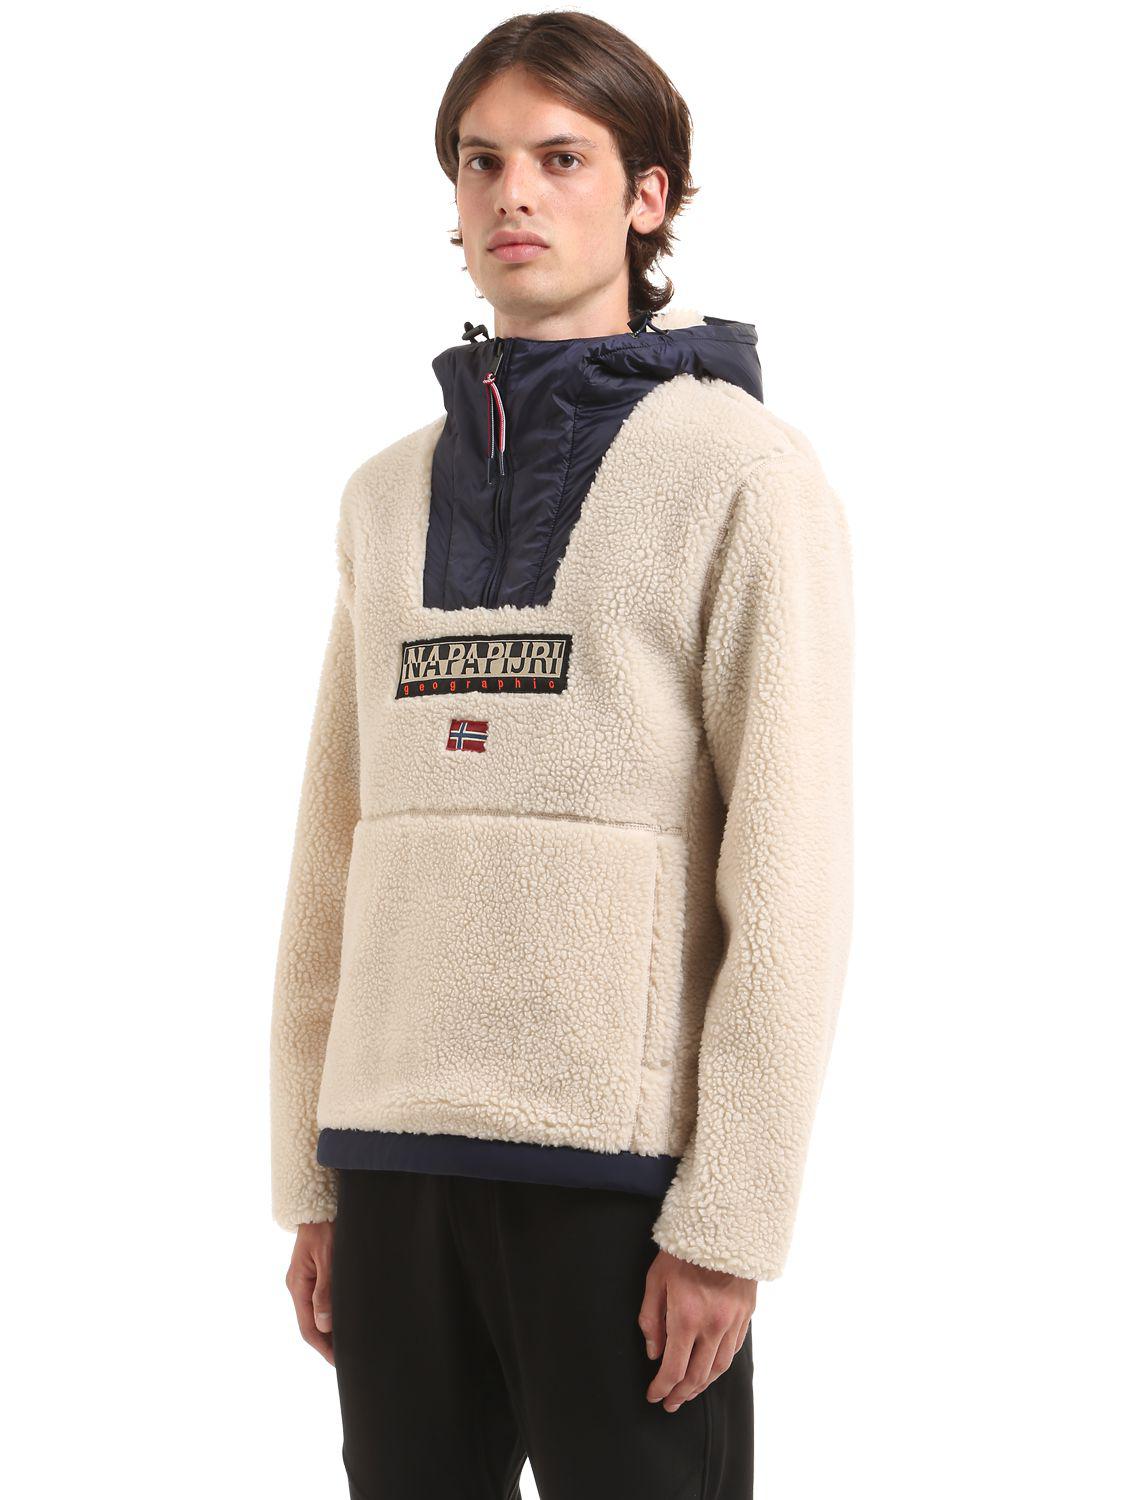 Napapijri Teide Sherpa Hooded Fleece Sweatshirt for Men - Lyst